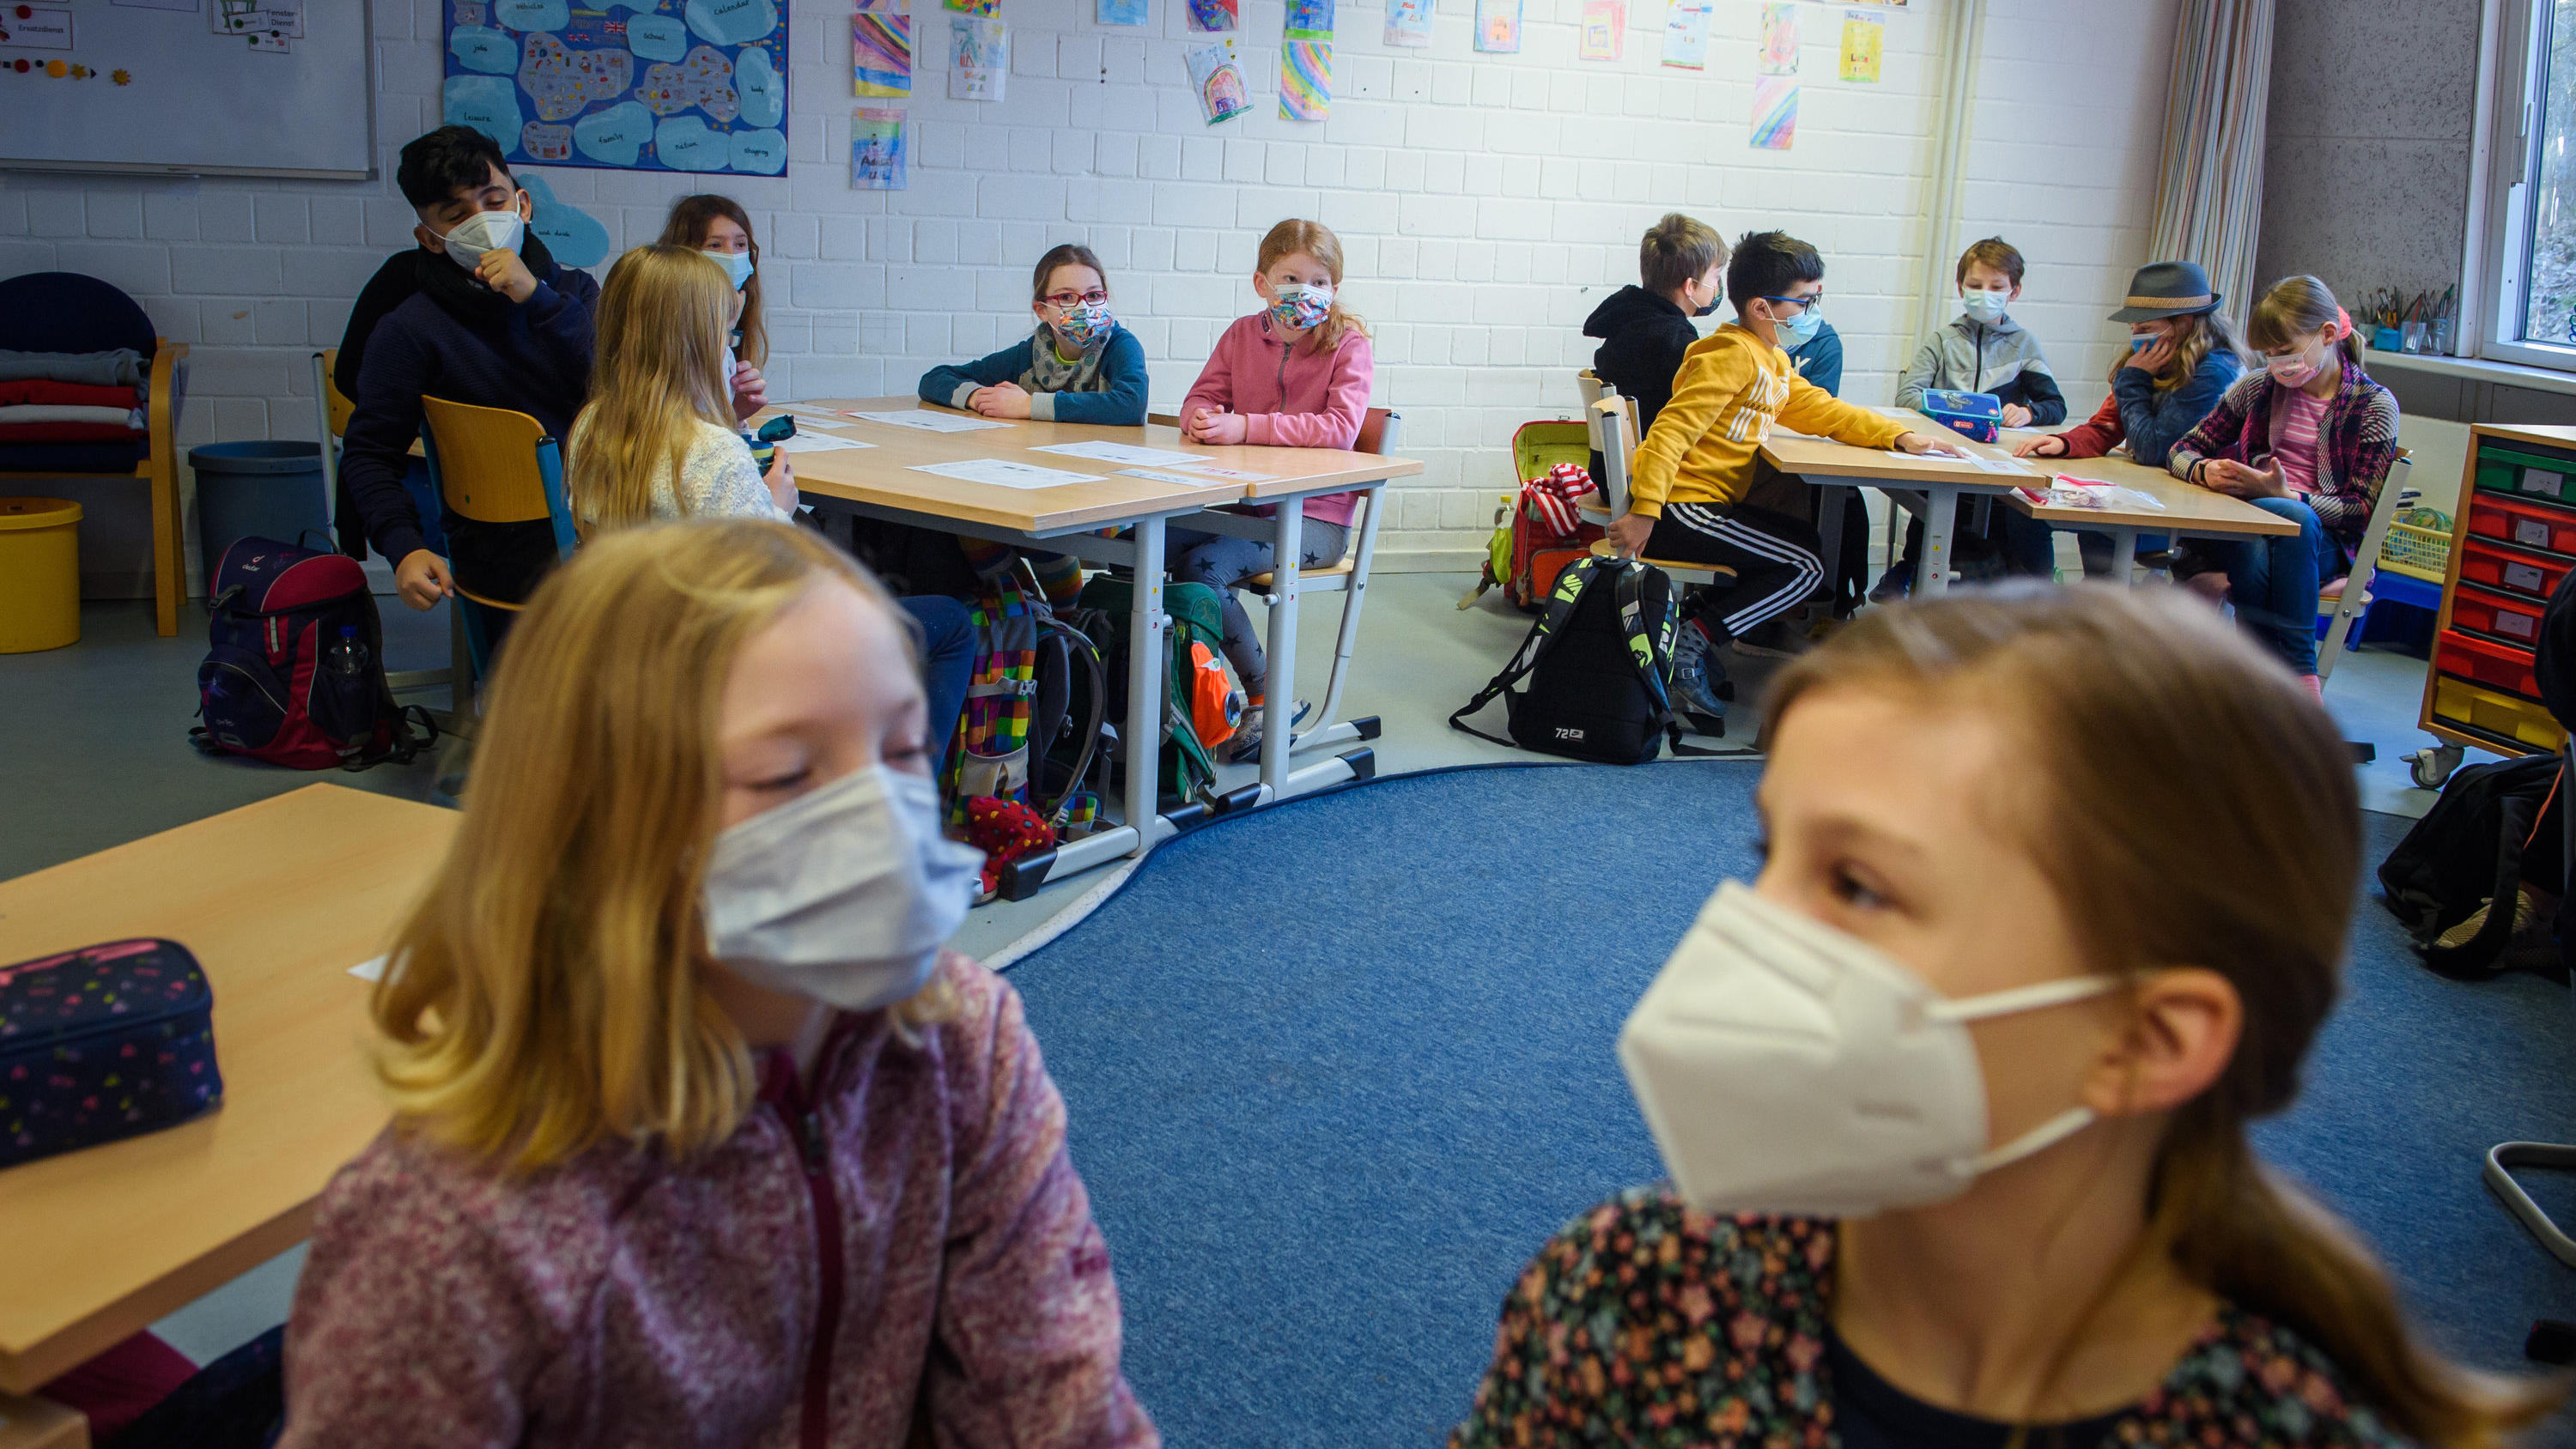 Schüler und Schülerinnen einer 4. Klasse sitzen im Unterricht an der Grundschule Russee in Kiel zusammen an einem Tisch und tragen dabei einen Mund-Nasen-Schutz. Trotz weiterhin verschärfter Kontaktbeschränkungen